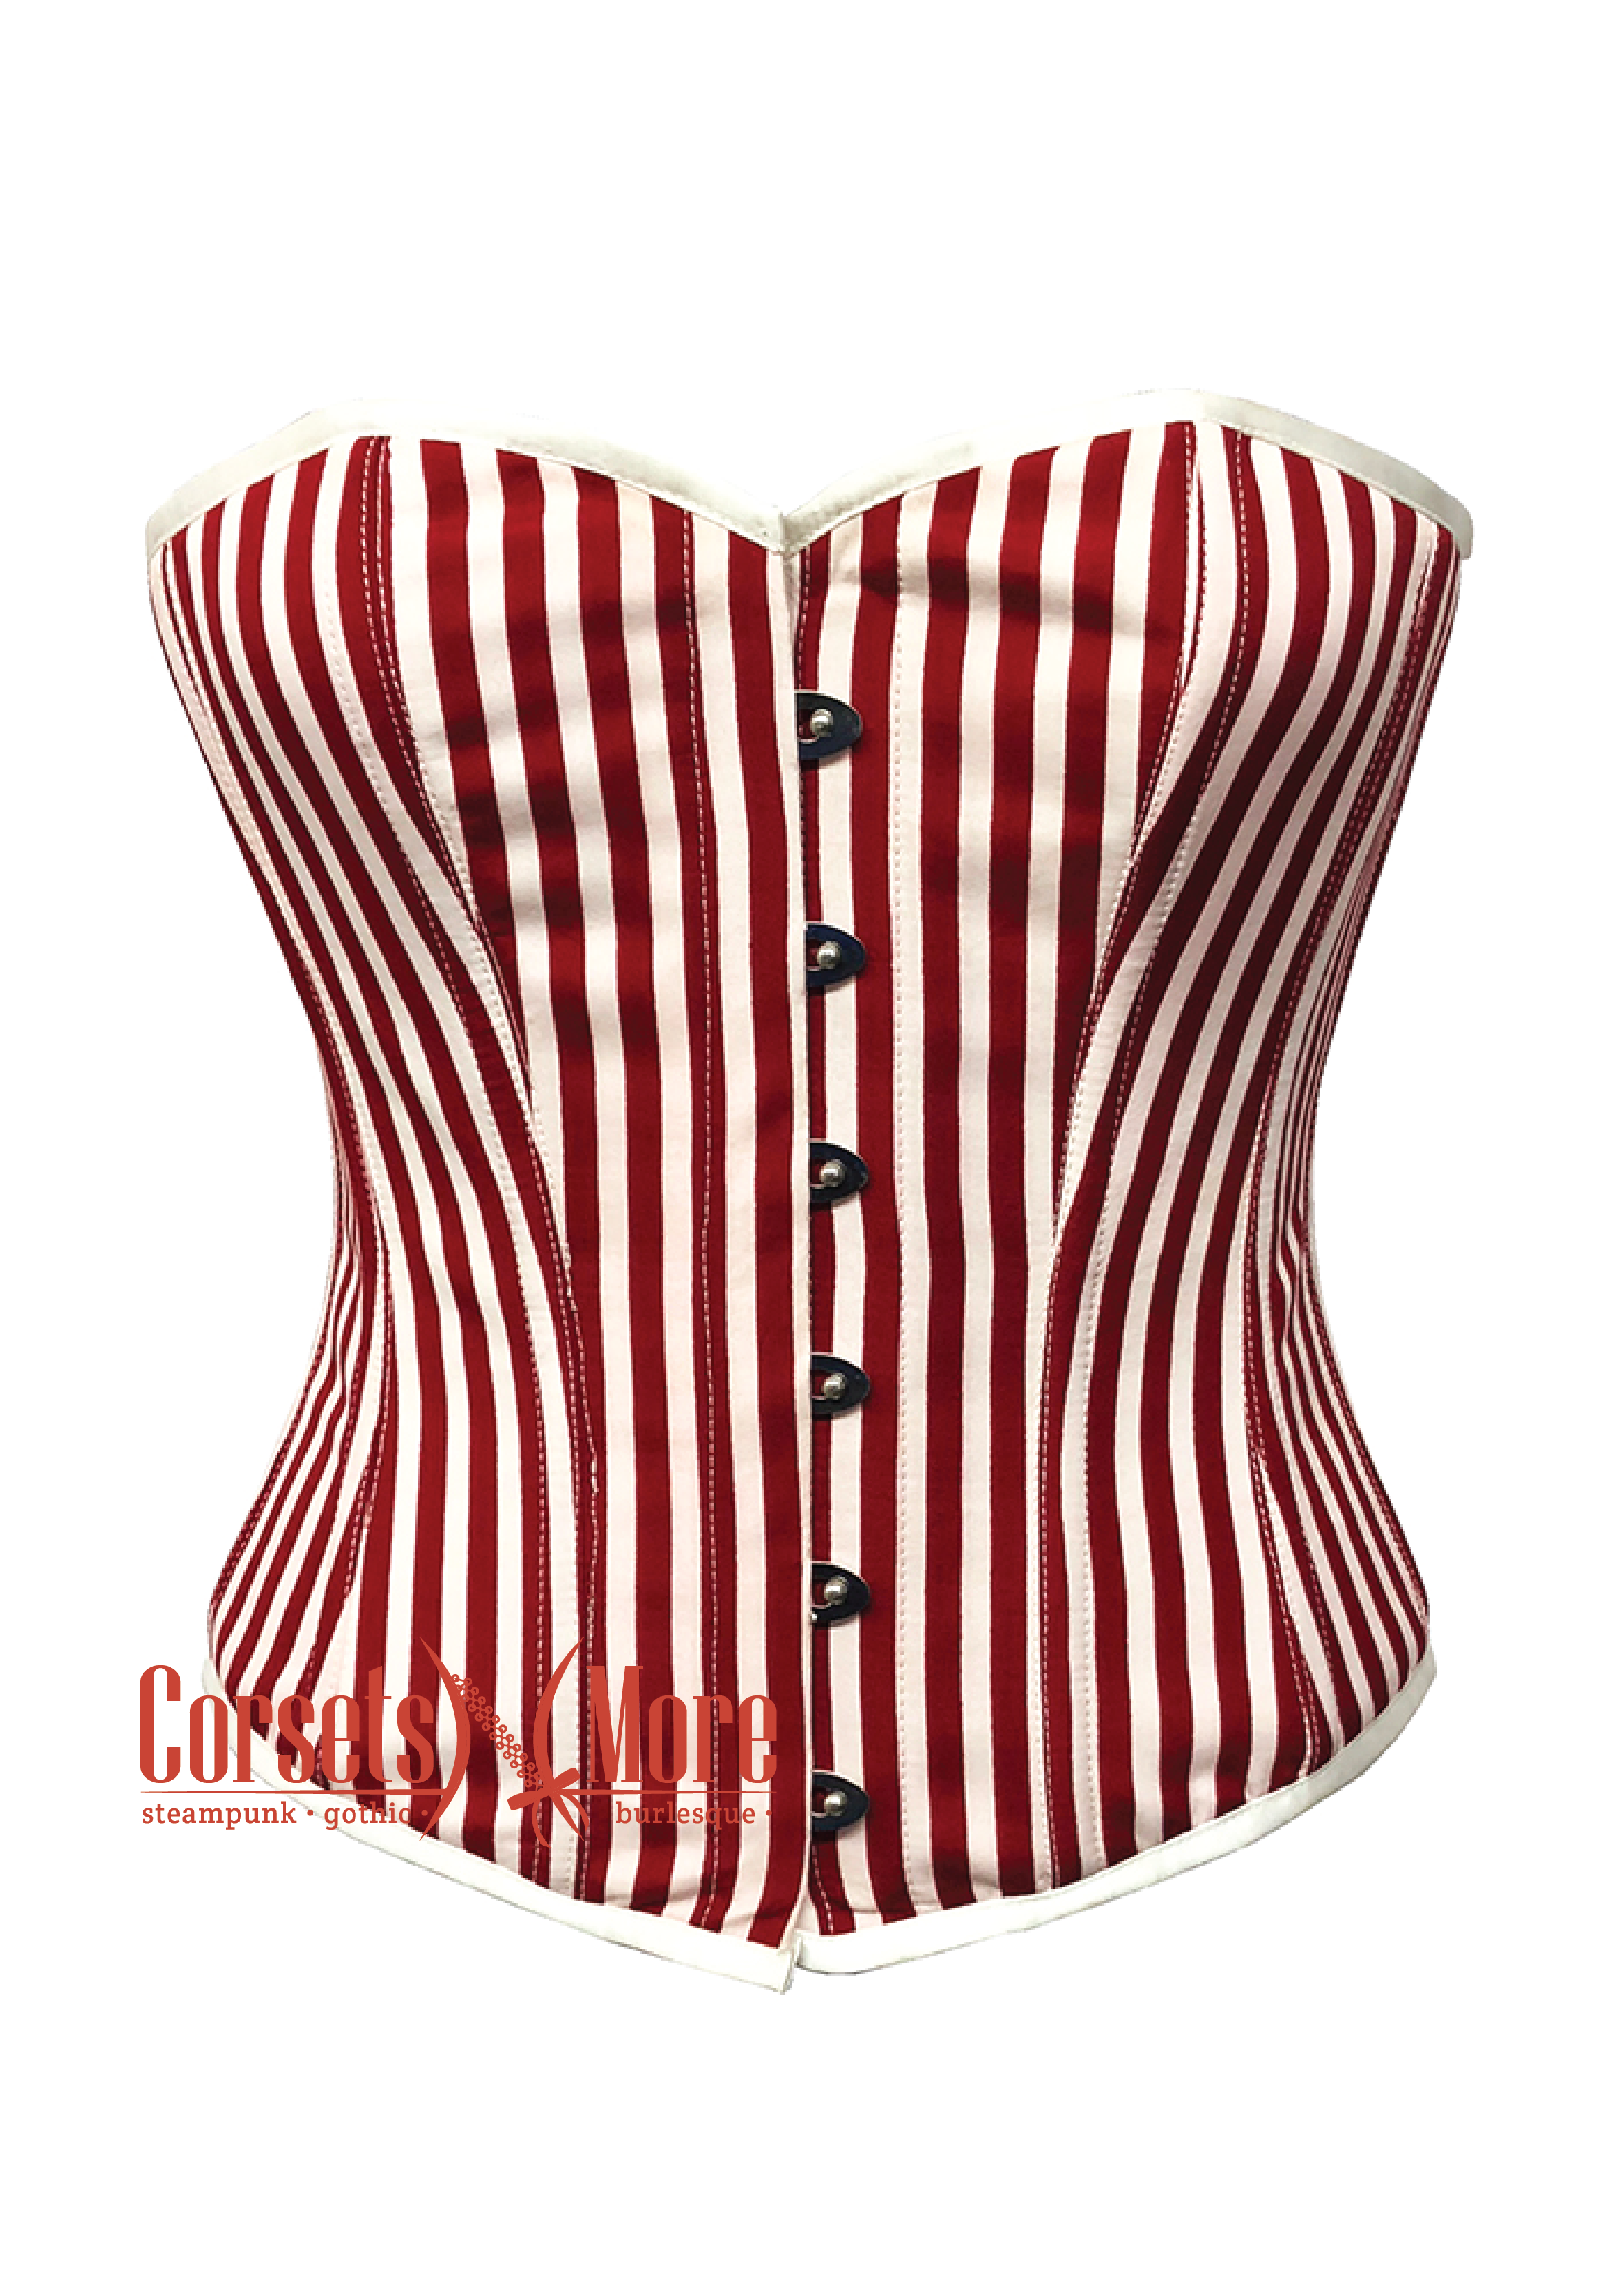 https://corsetsnmore.com/cdn/shop/products/CNM-787_60ec76d4-ea2e-4df1-b8d0-751a064fdb04_2334x.png?v=1651750627